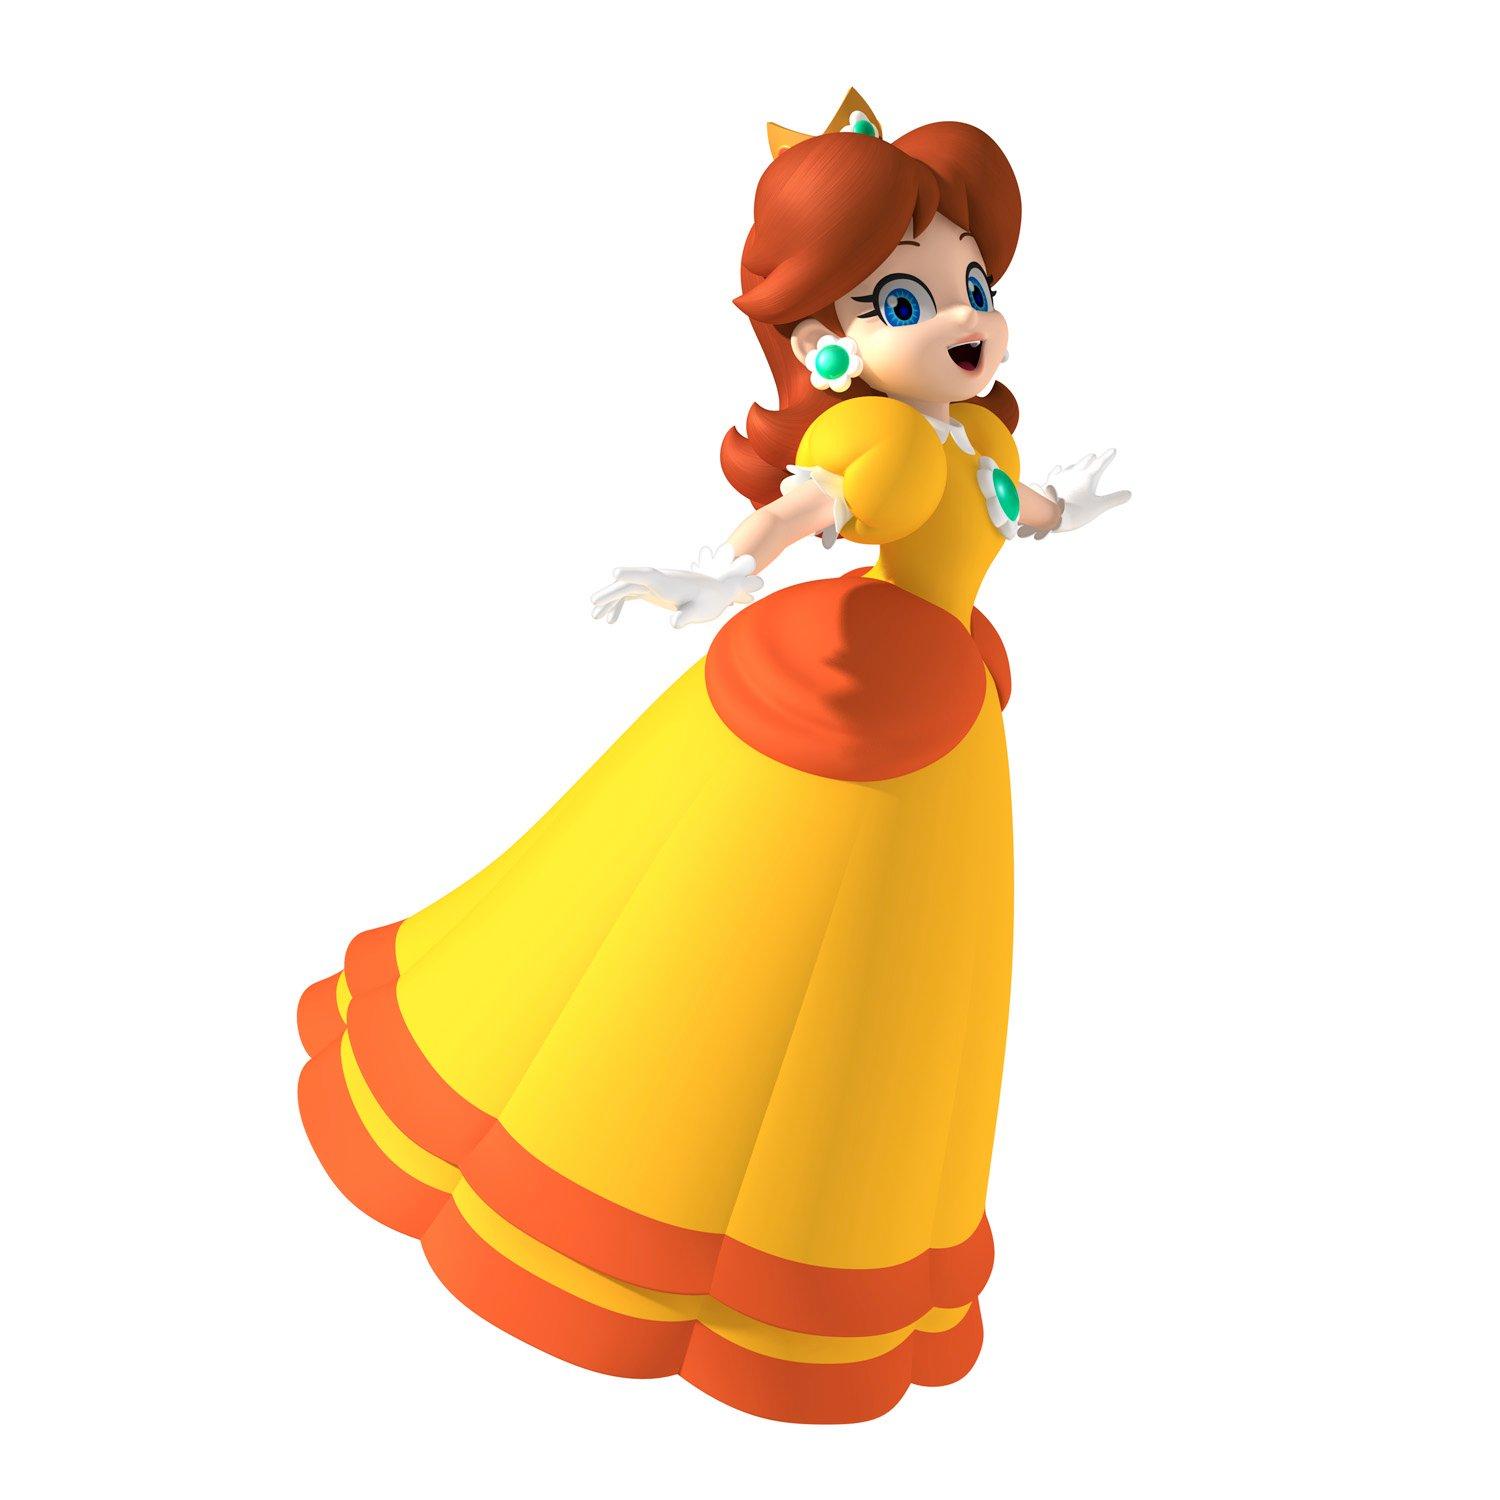 Mario Party 8 - Nintendo Wii | Nintendo | GameStop